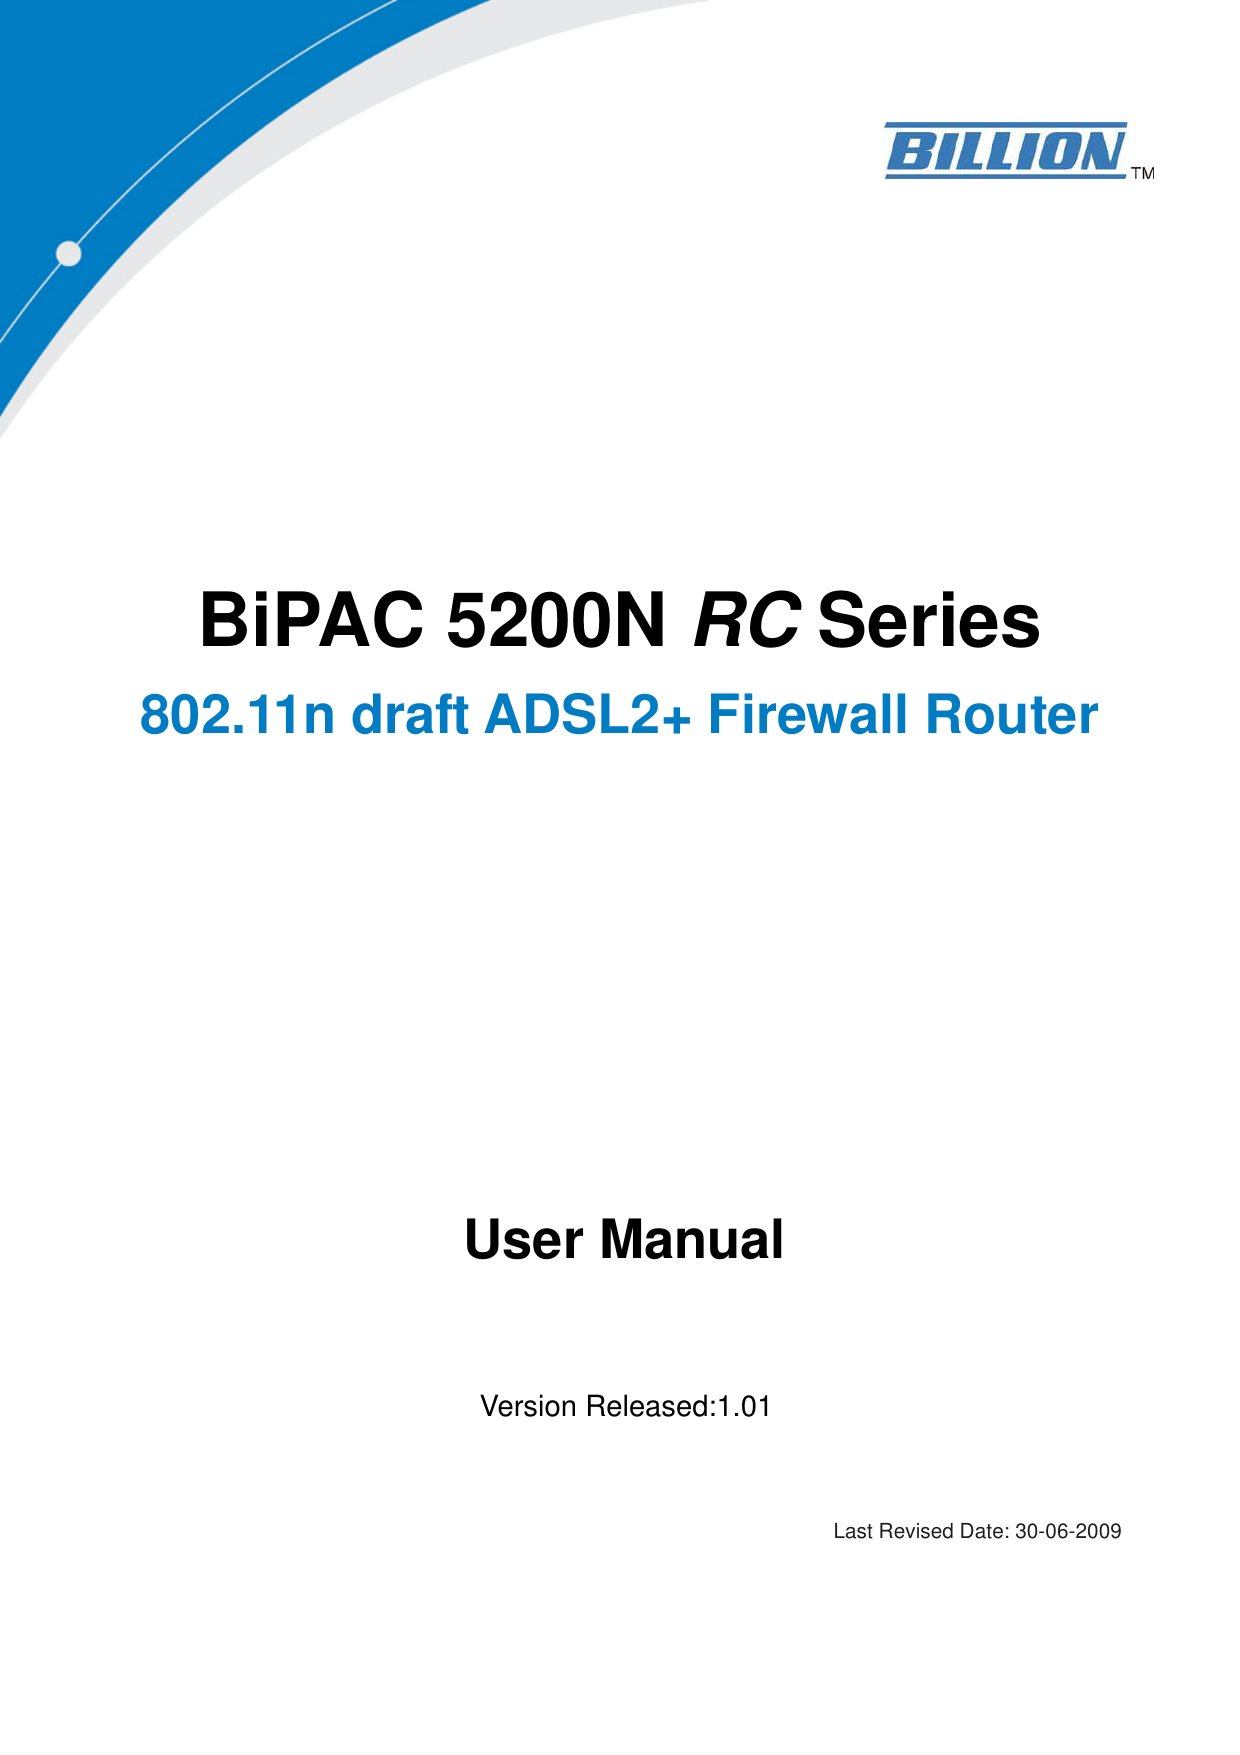    BiPAC 5200N RC Series 802.11n draft ADSL2+ Firewall Router     User Manual   Version Released:1.01                                                                                                                                                   Last Revised Date: 30-06-2009   